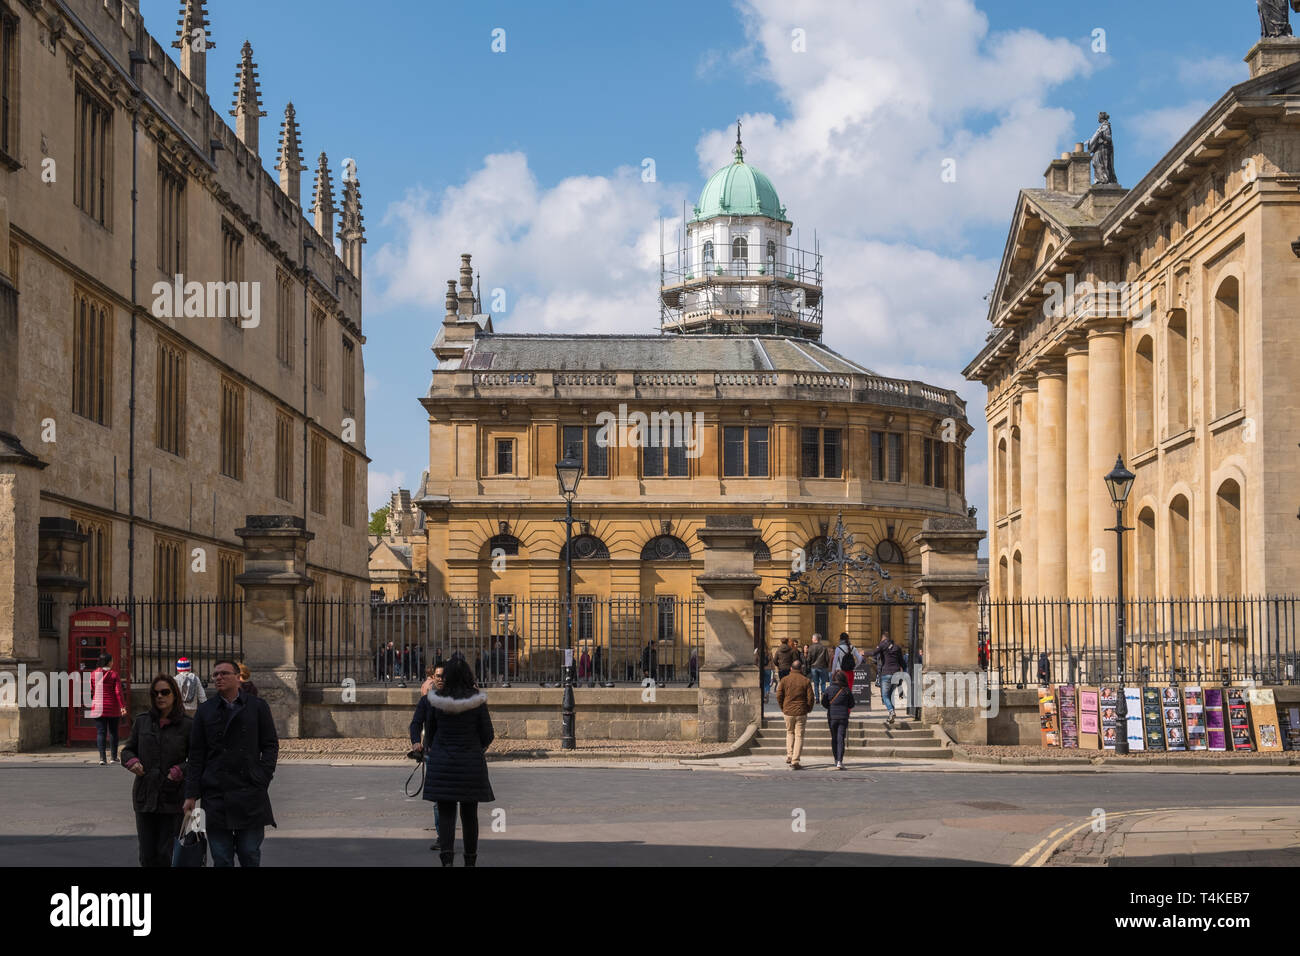 Vue depuis la rue de Catte Sheldonian Theatre avec Bodleian Library à gauche et à droite du bâtiment Clarendon, tous partie de l'Université d'Oxford, UK Banque D'Images